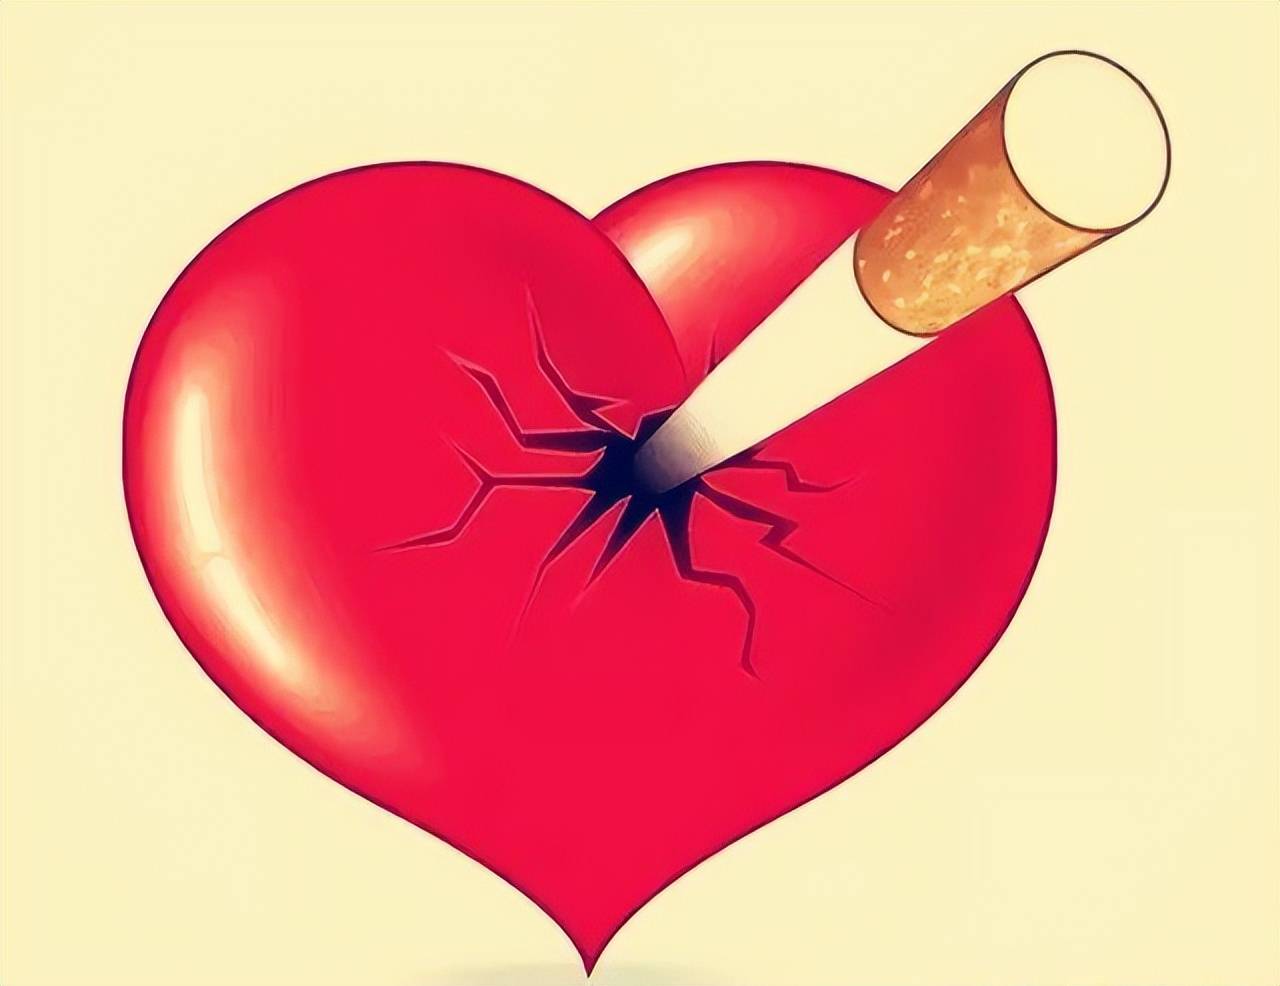 吸烟对肺的伤害大,还是对心血管的伤害大?望你早点搞清楚